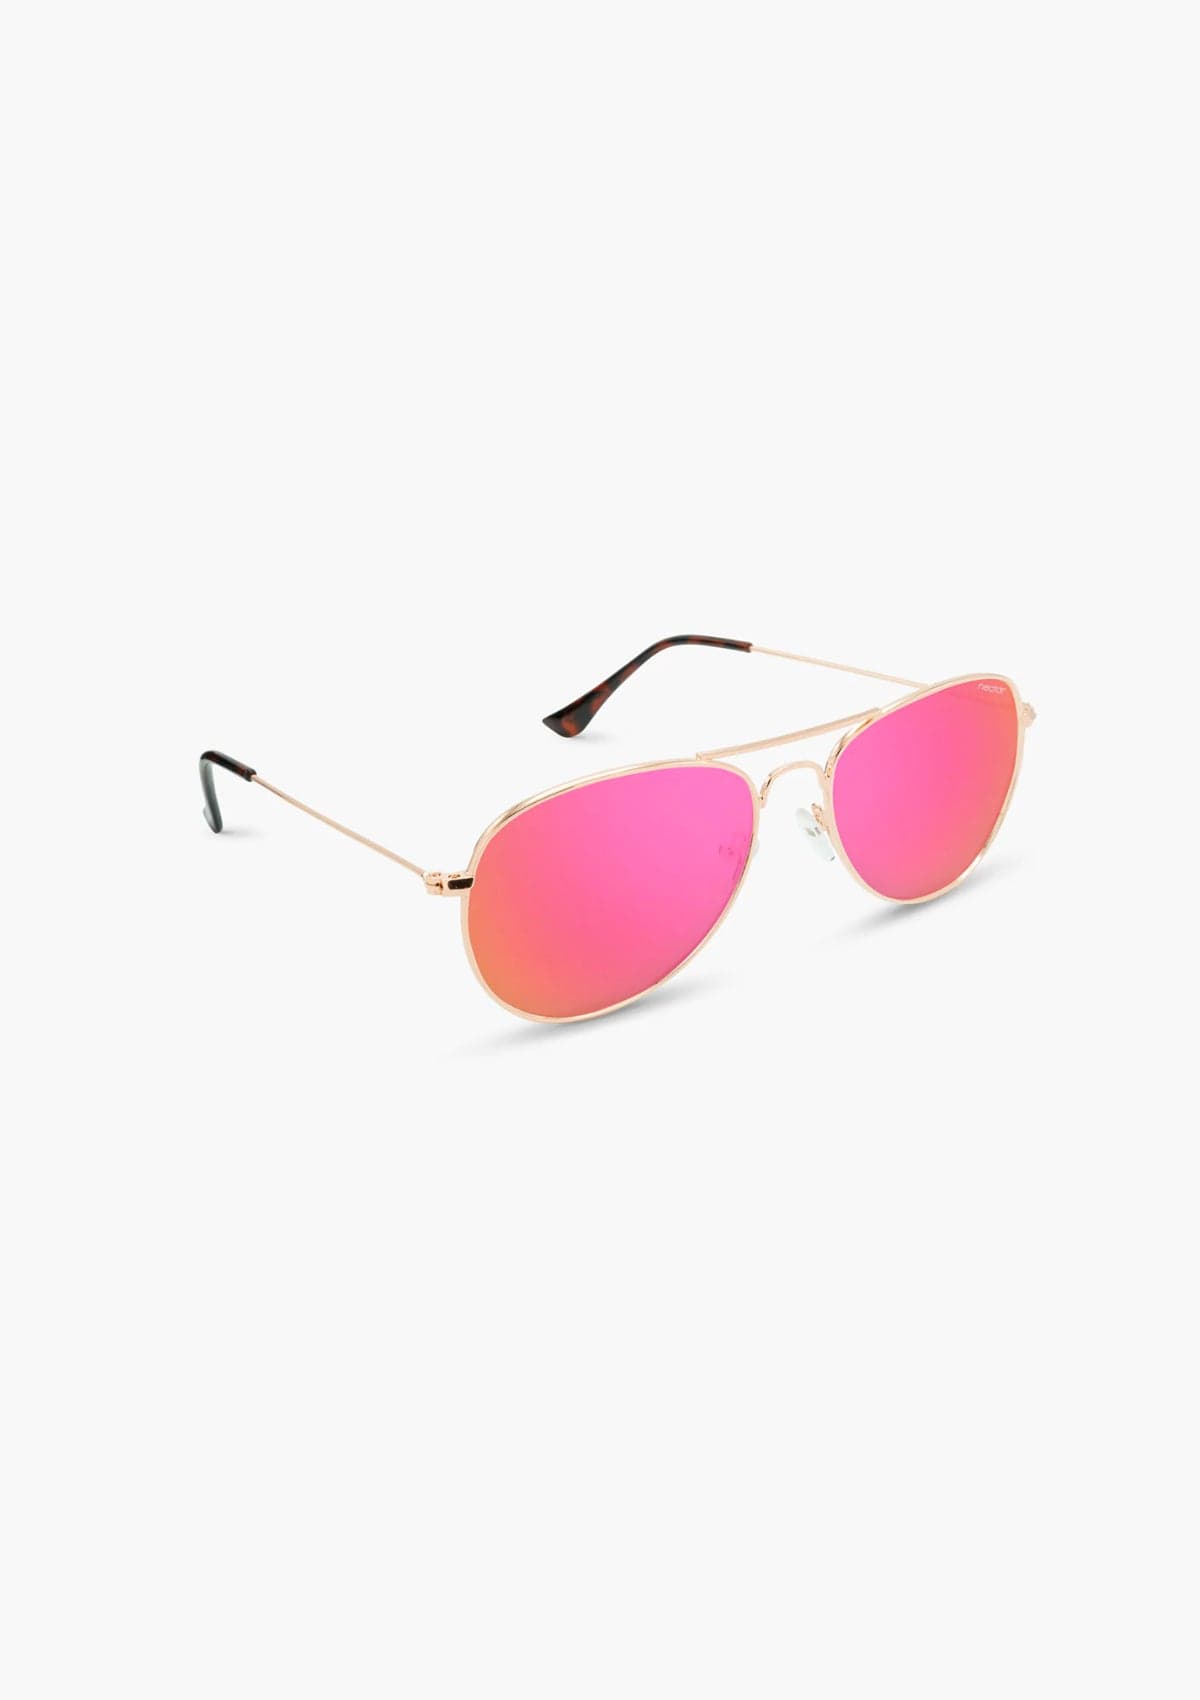 Kitty Hawk Sunglasses